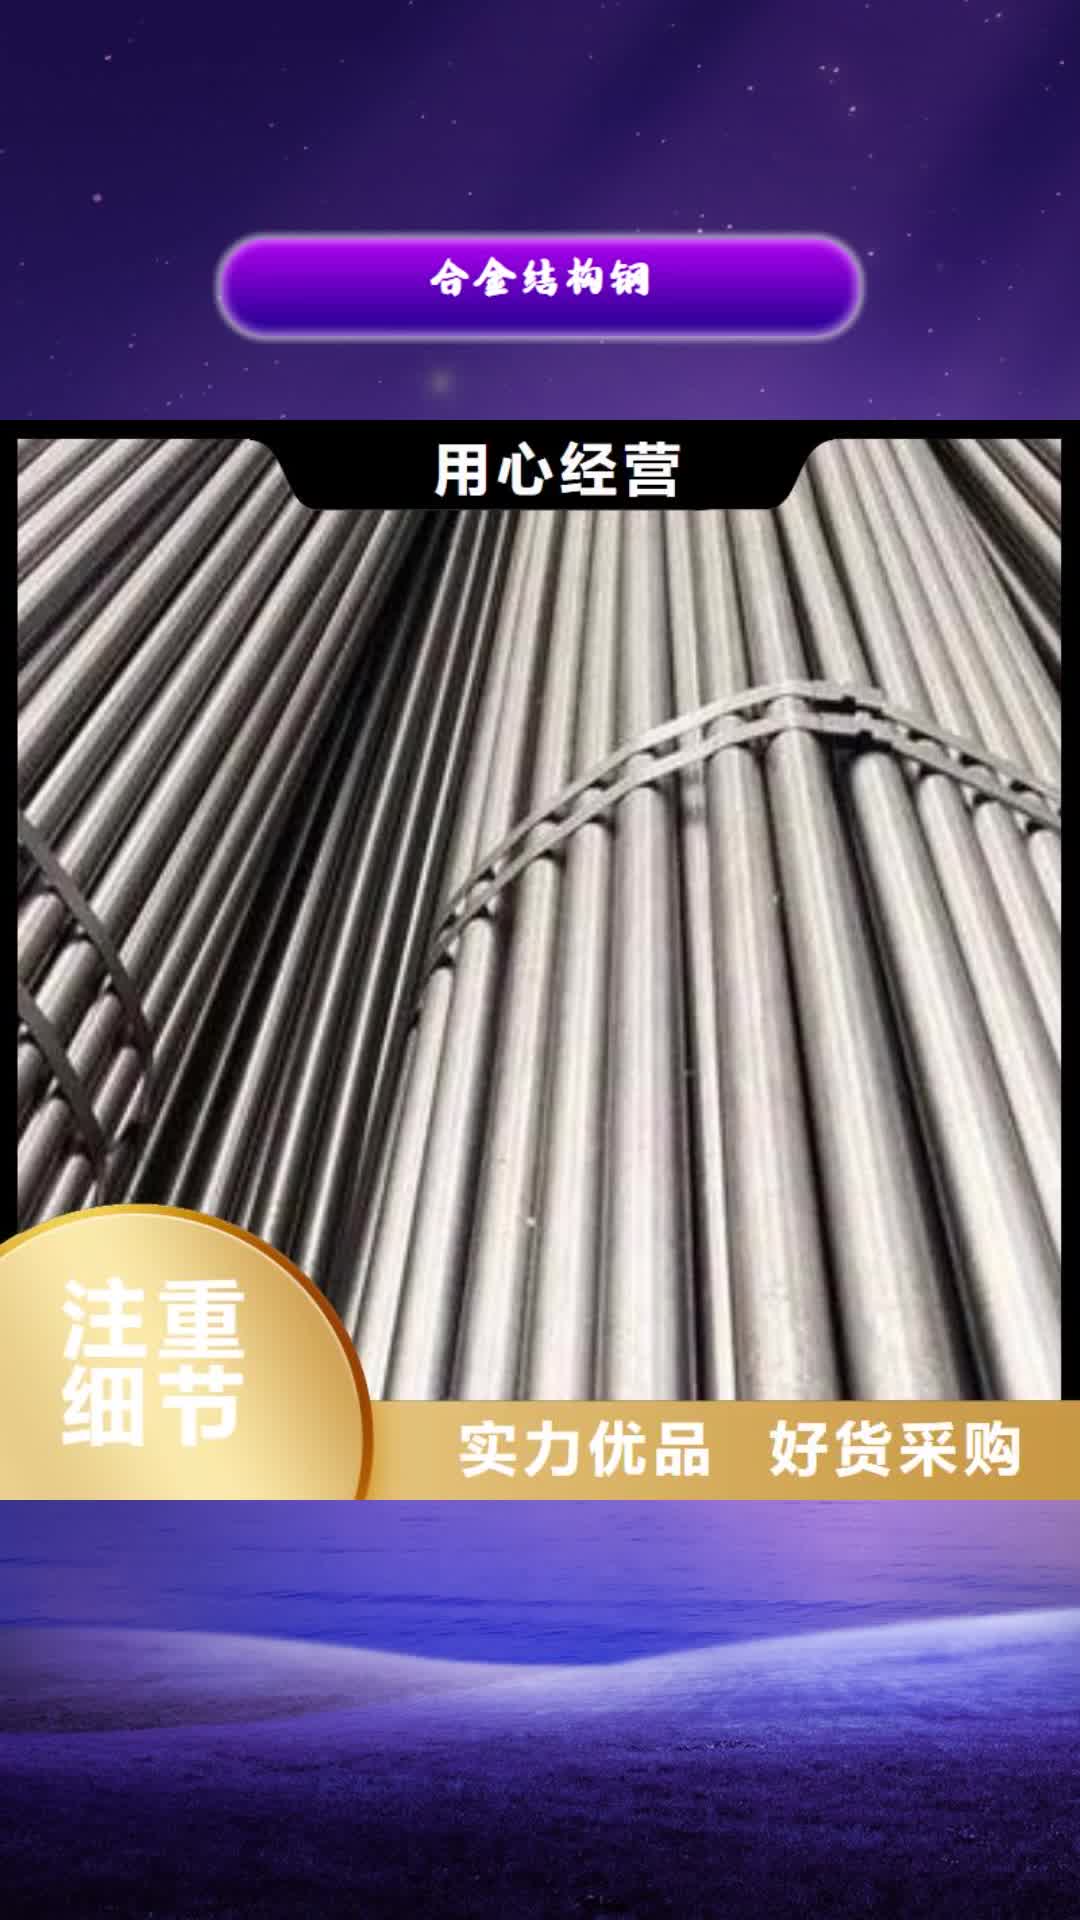 安康【合金结构钢】,不锈钢管价格保障产品质量